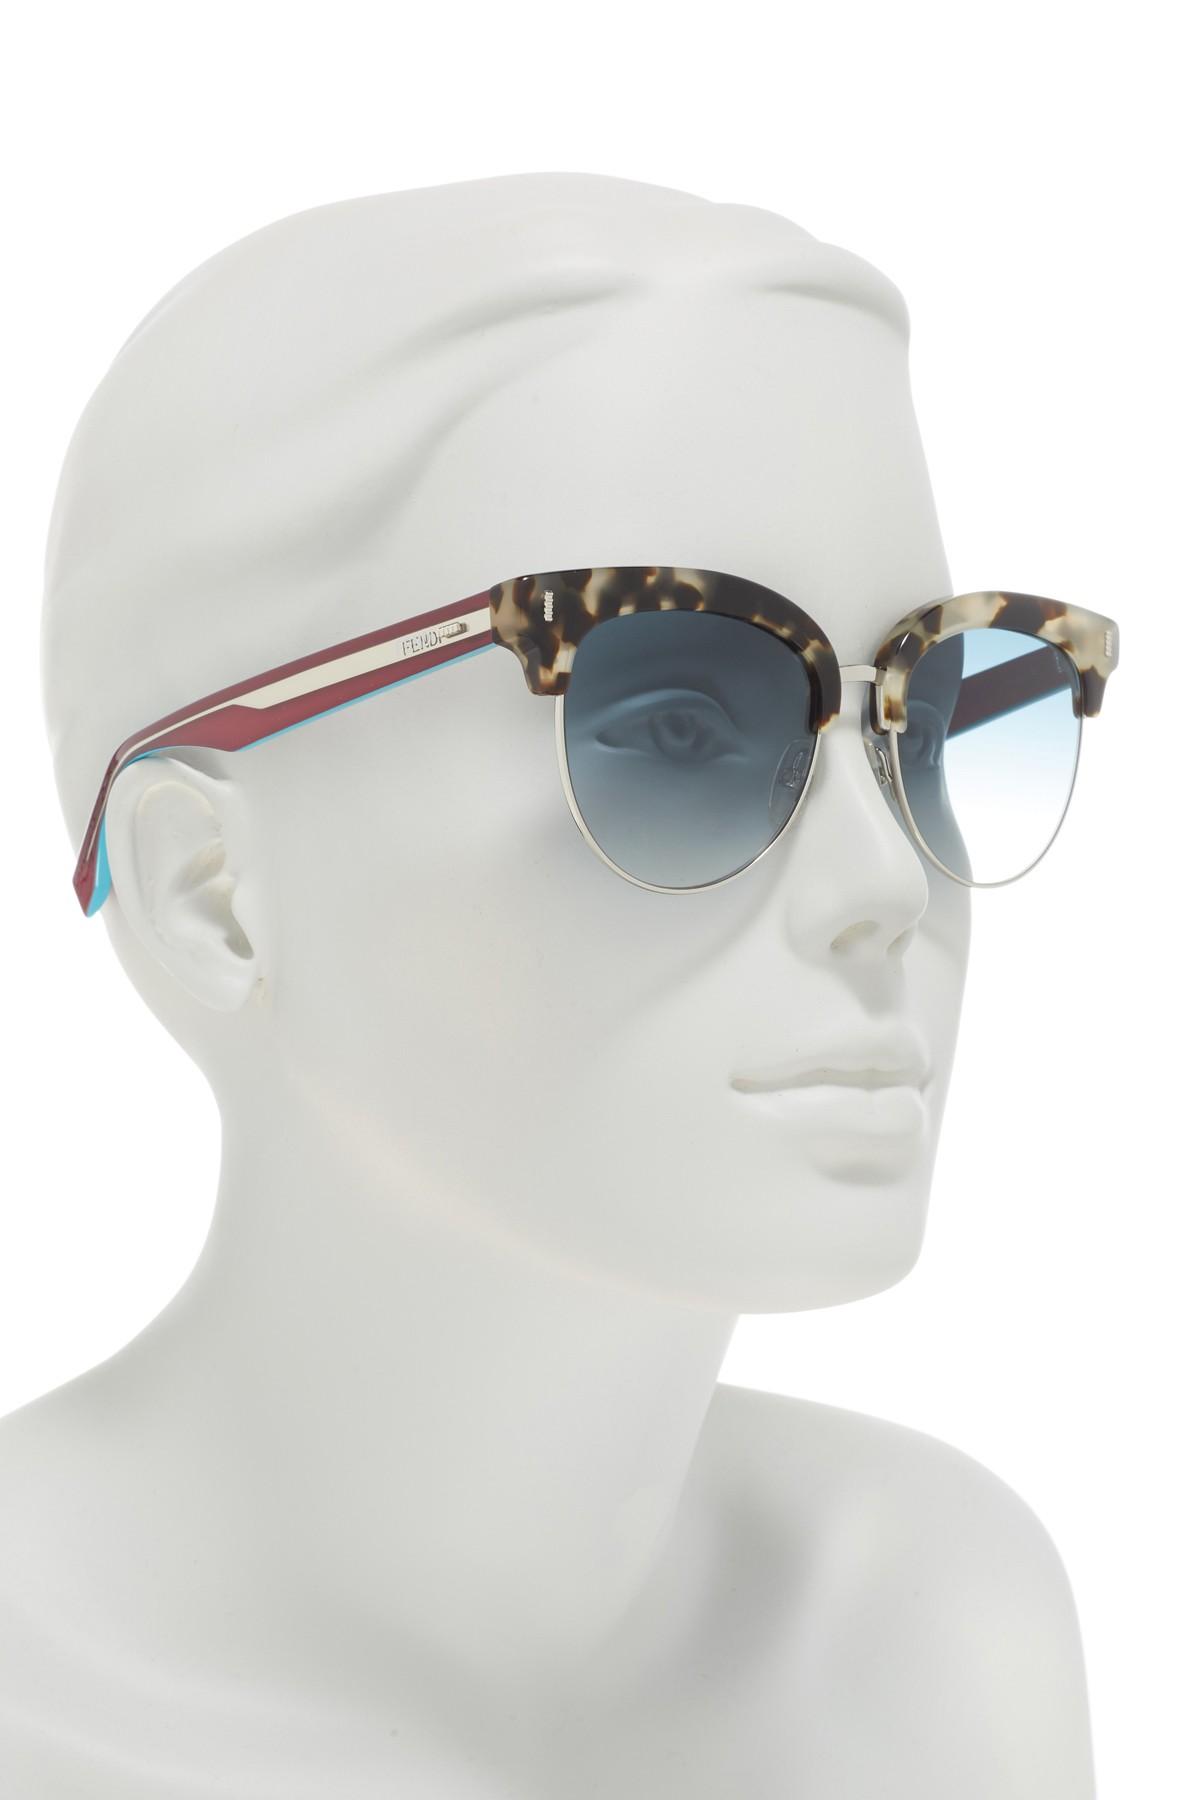 fendi clubmaster sunglasses